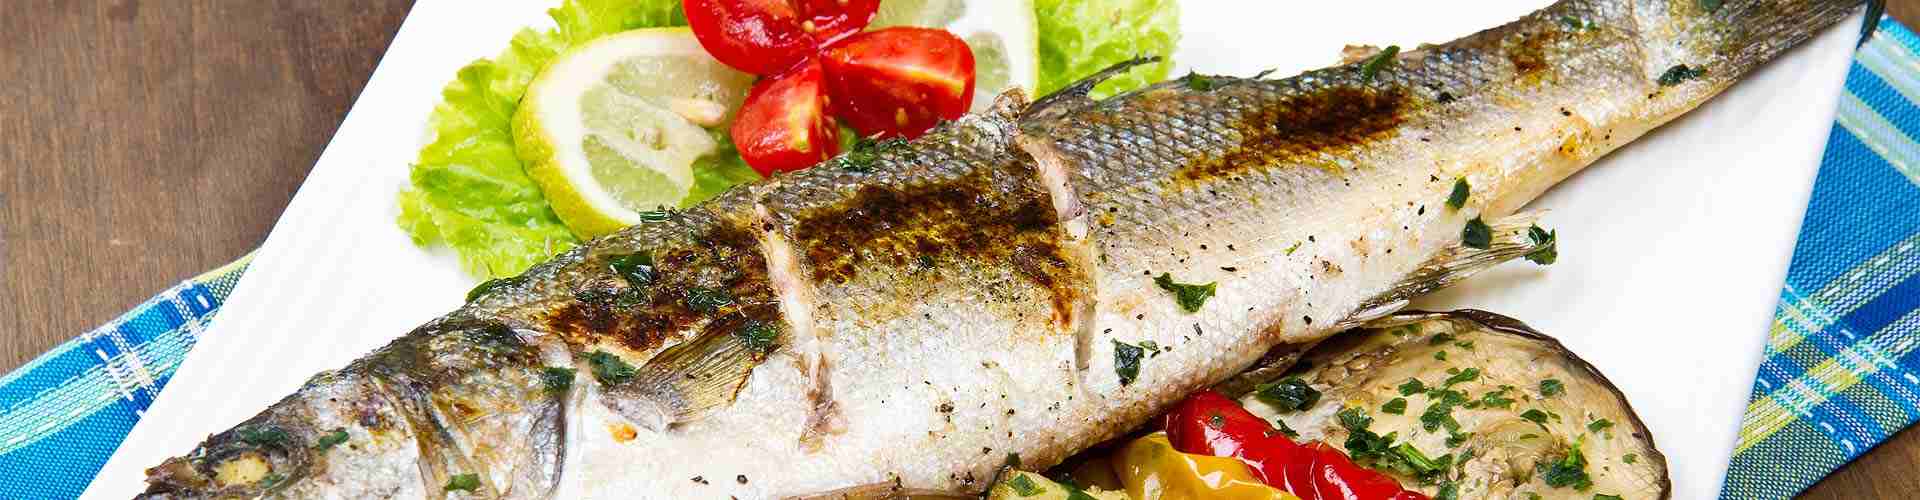 ¿Dónde comer pescado en Rial?